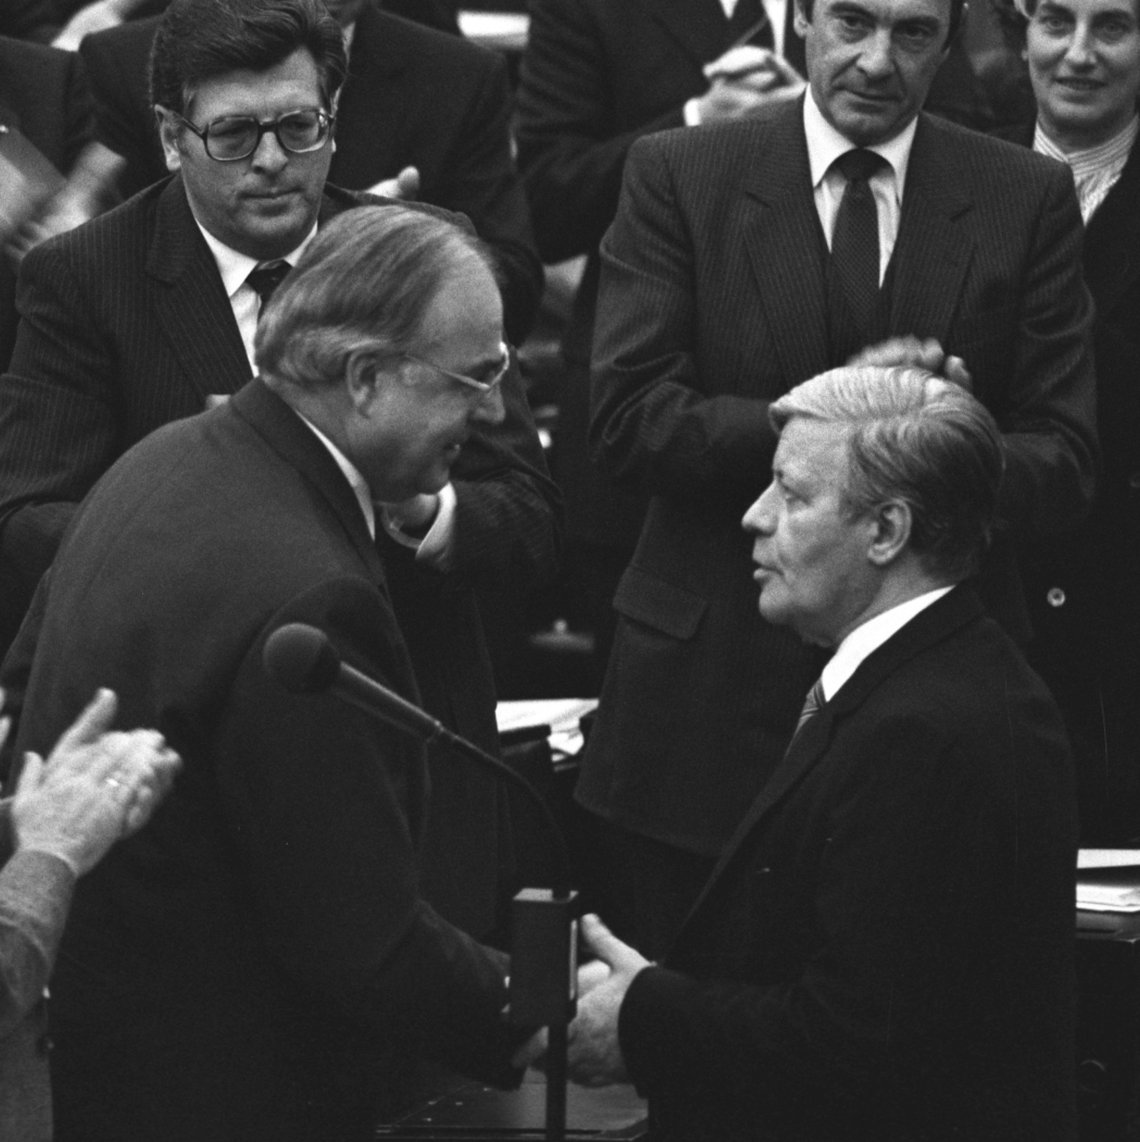 Schwarz-Weiss-Aufnahme von Helmut Schmid, wie er Helmut Kohl zu seiner Wahl zum Bundeskanzler gratuliert